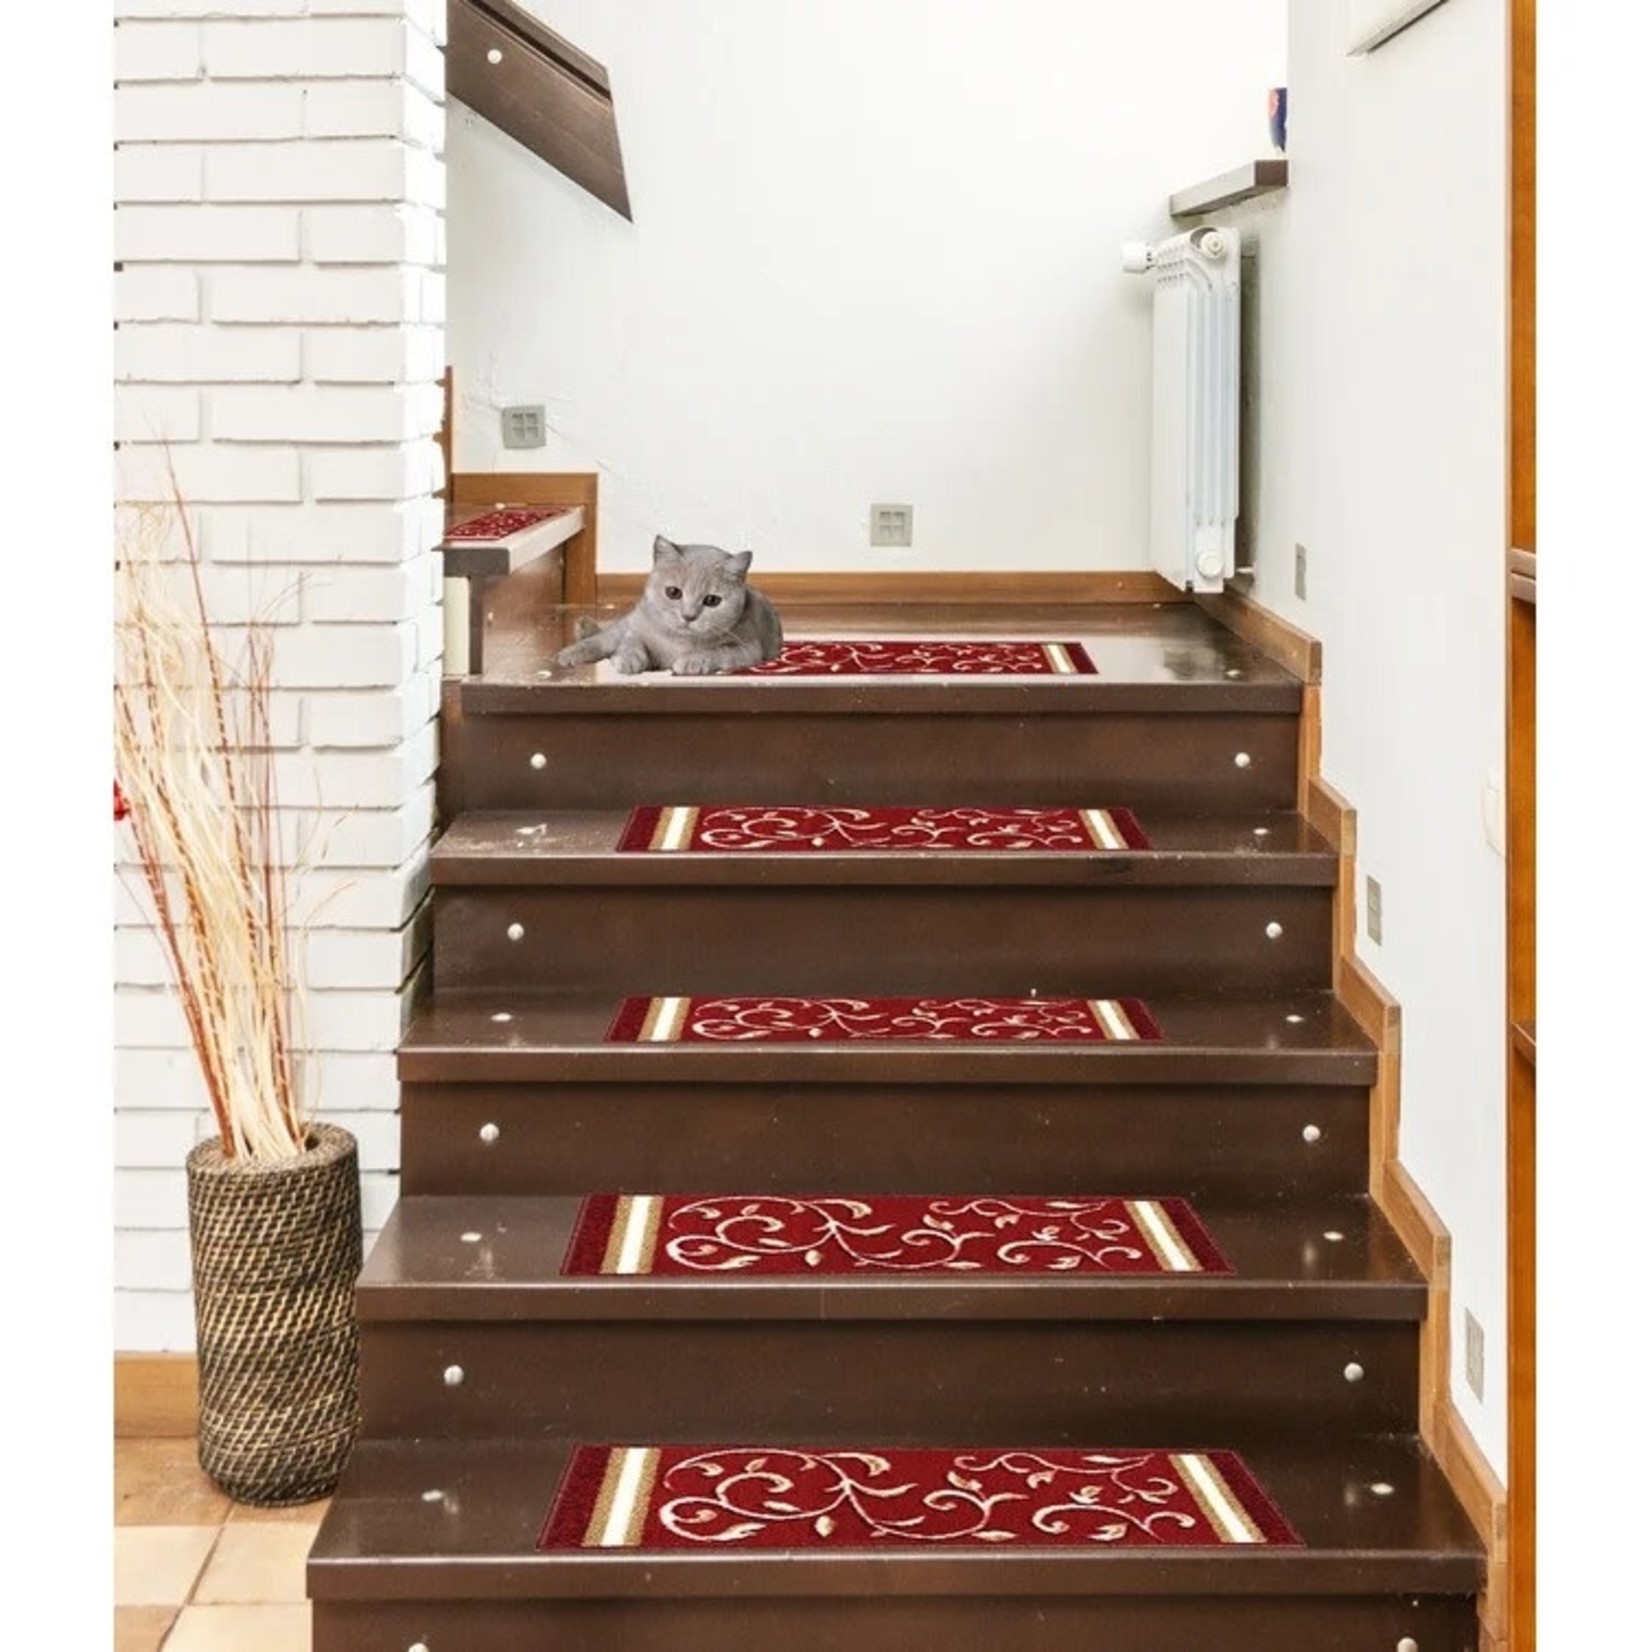 *8.5"x26"Weinert Non-Slip Carpet Stair Tread - Set of 7 - Red